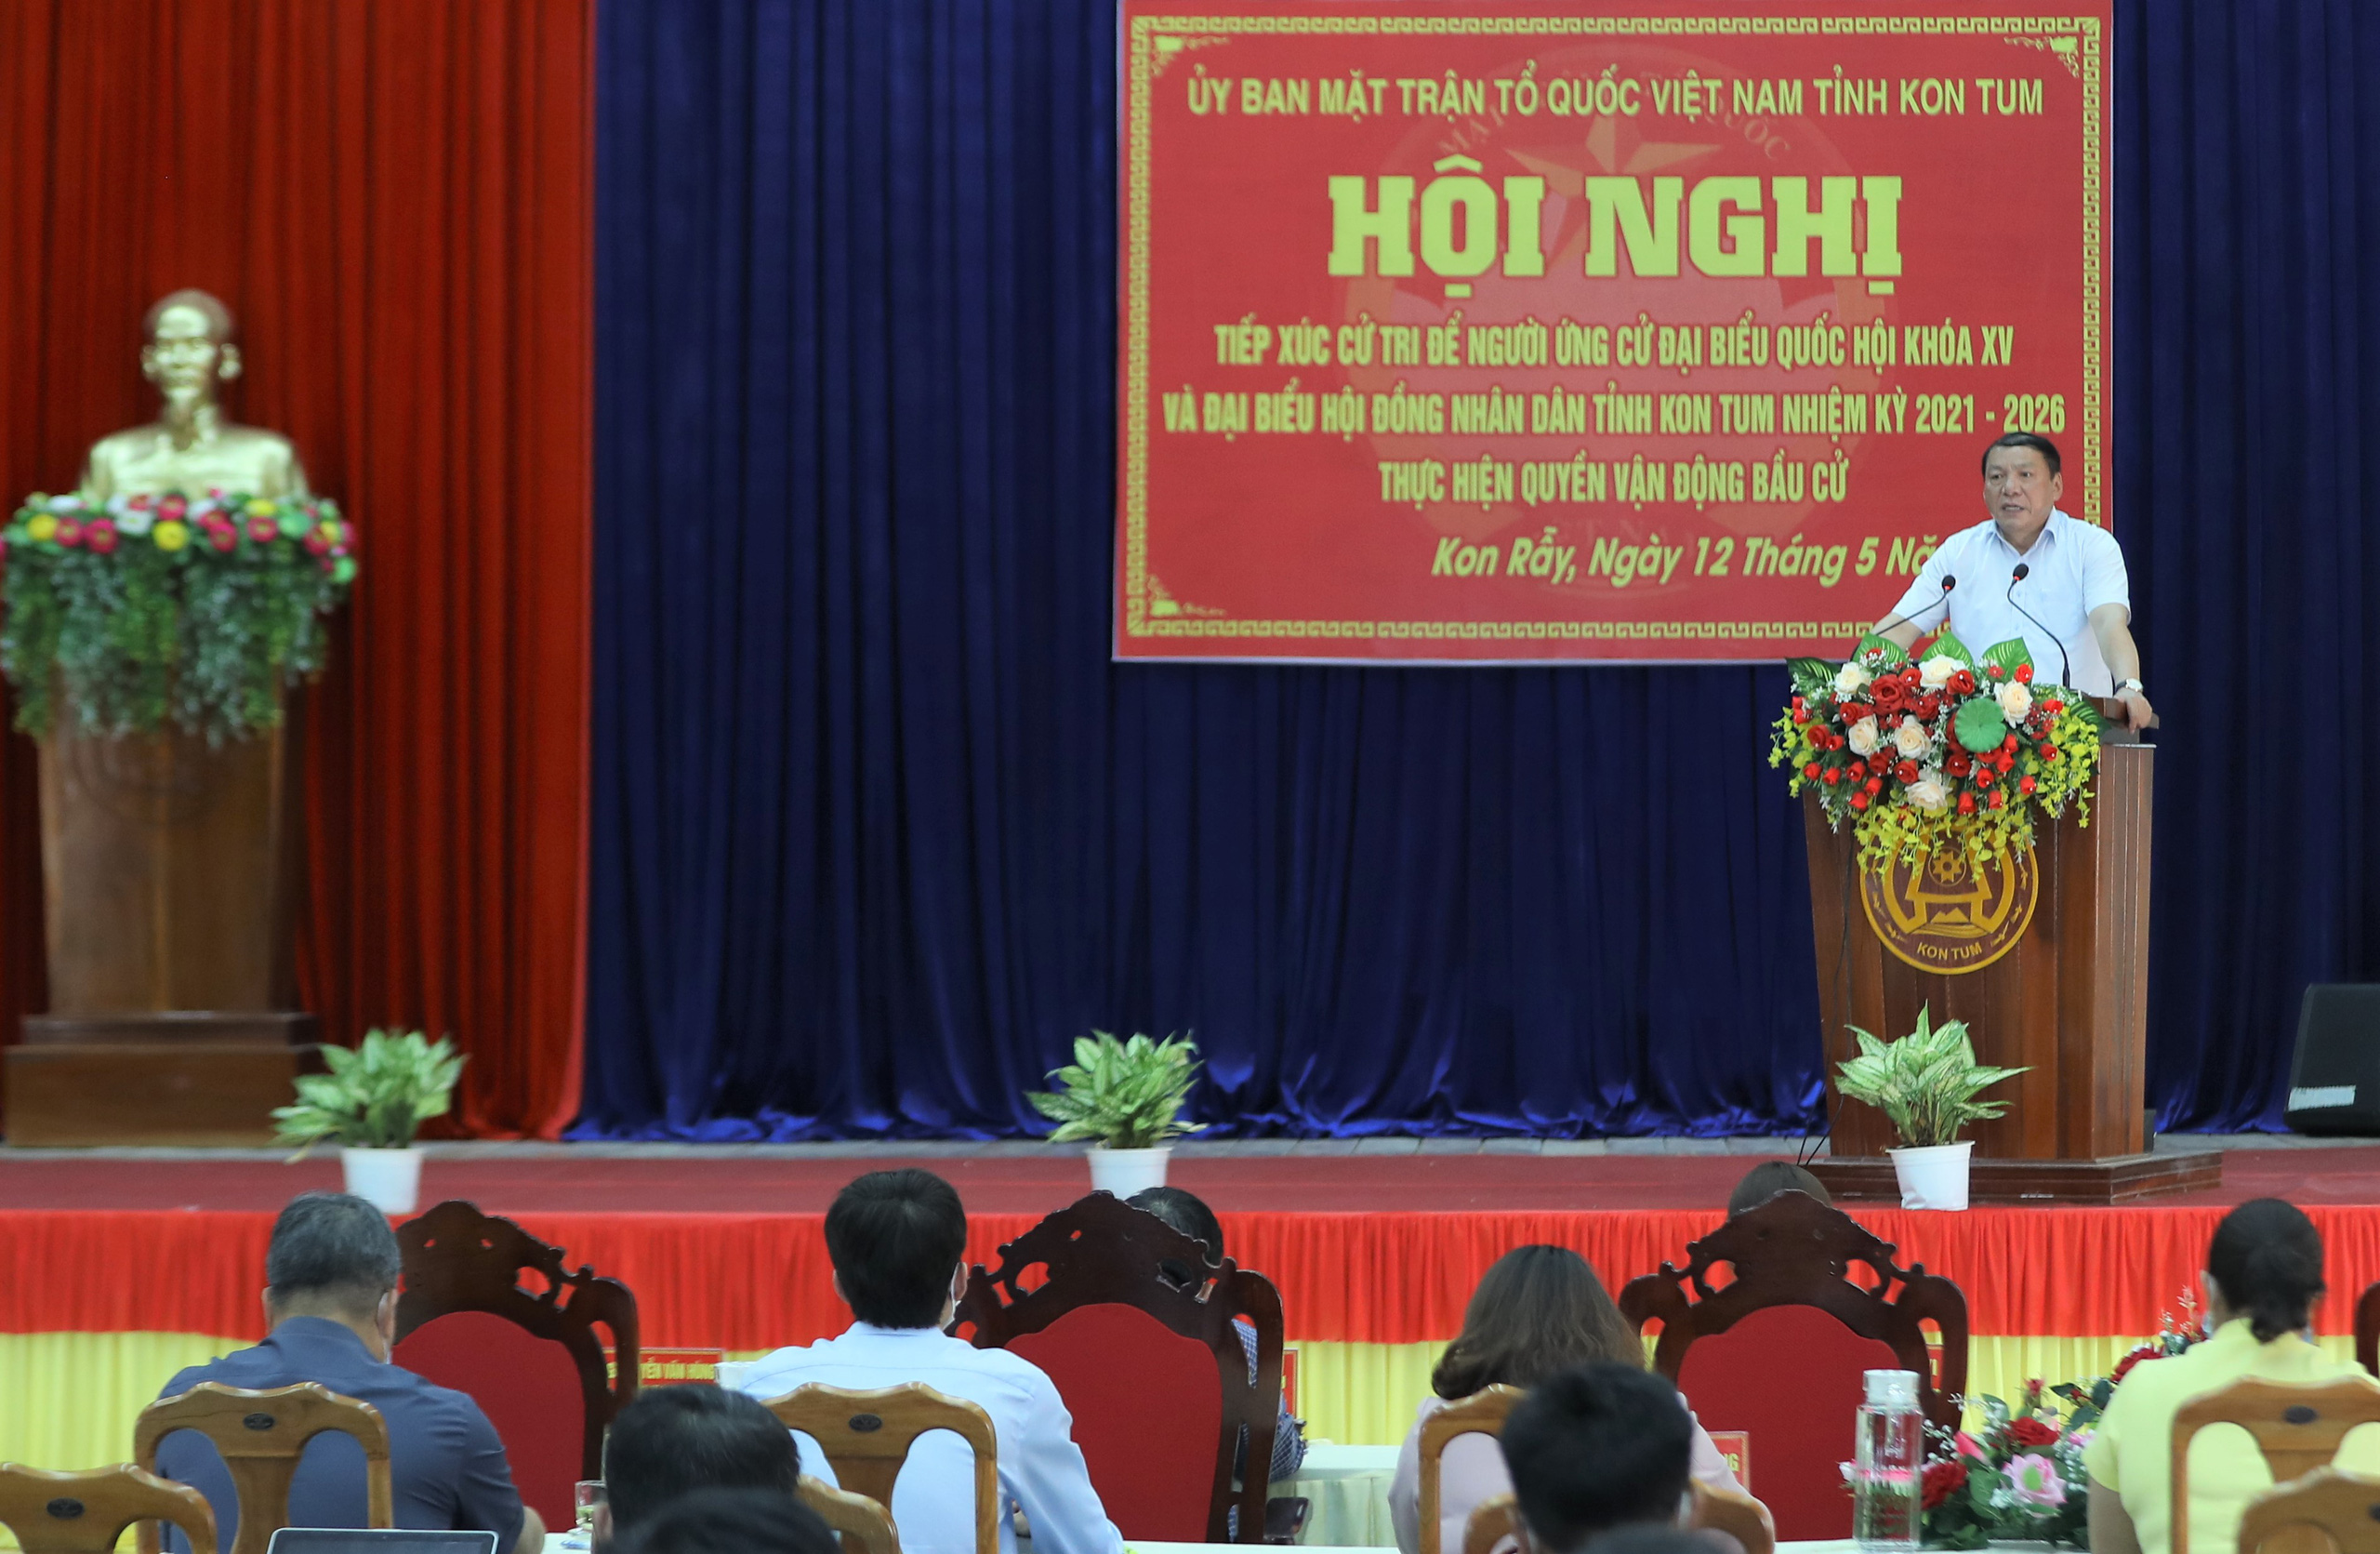 Bộ trưởng Nguyễn Văn Hùng trăn trở về “bài toán” nâng cao thu nhập cho người dân tỉnh Kon Tum  - Ảnh 2.